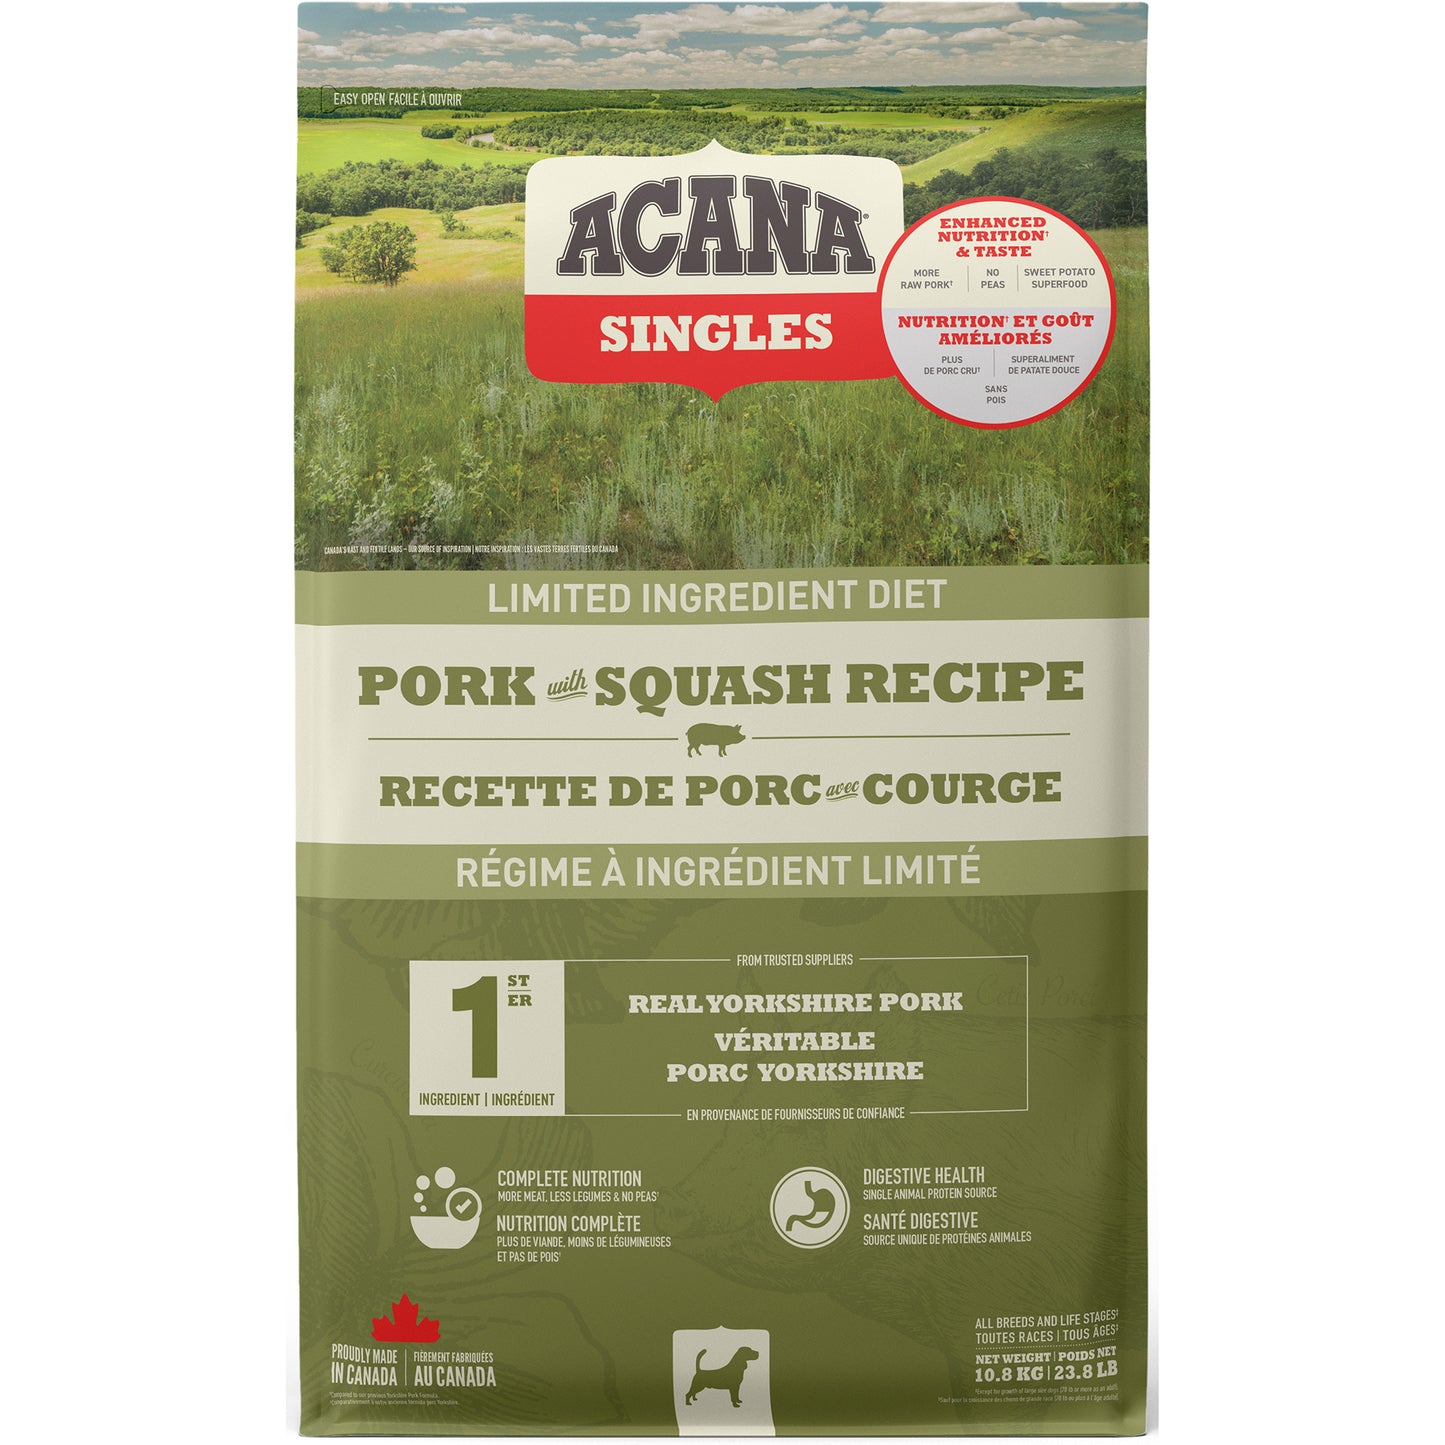 ACANA® SINGLES Pork with Squash Recipe